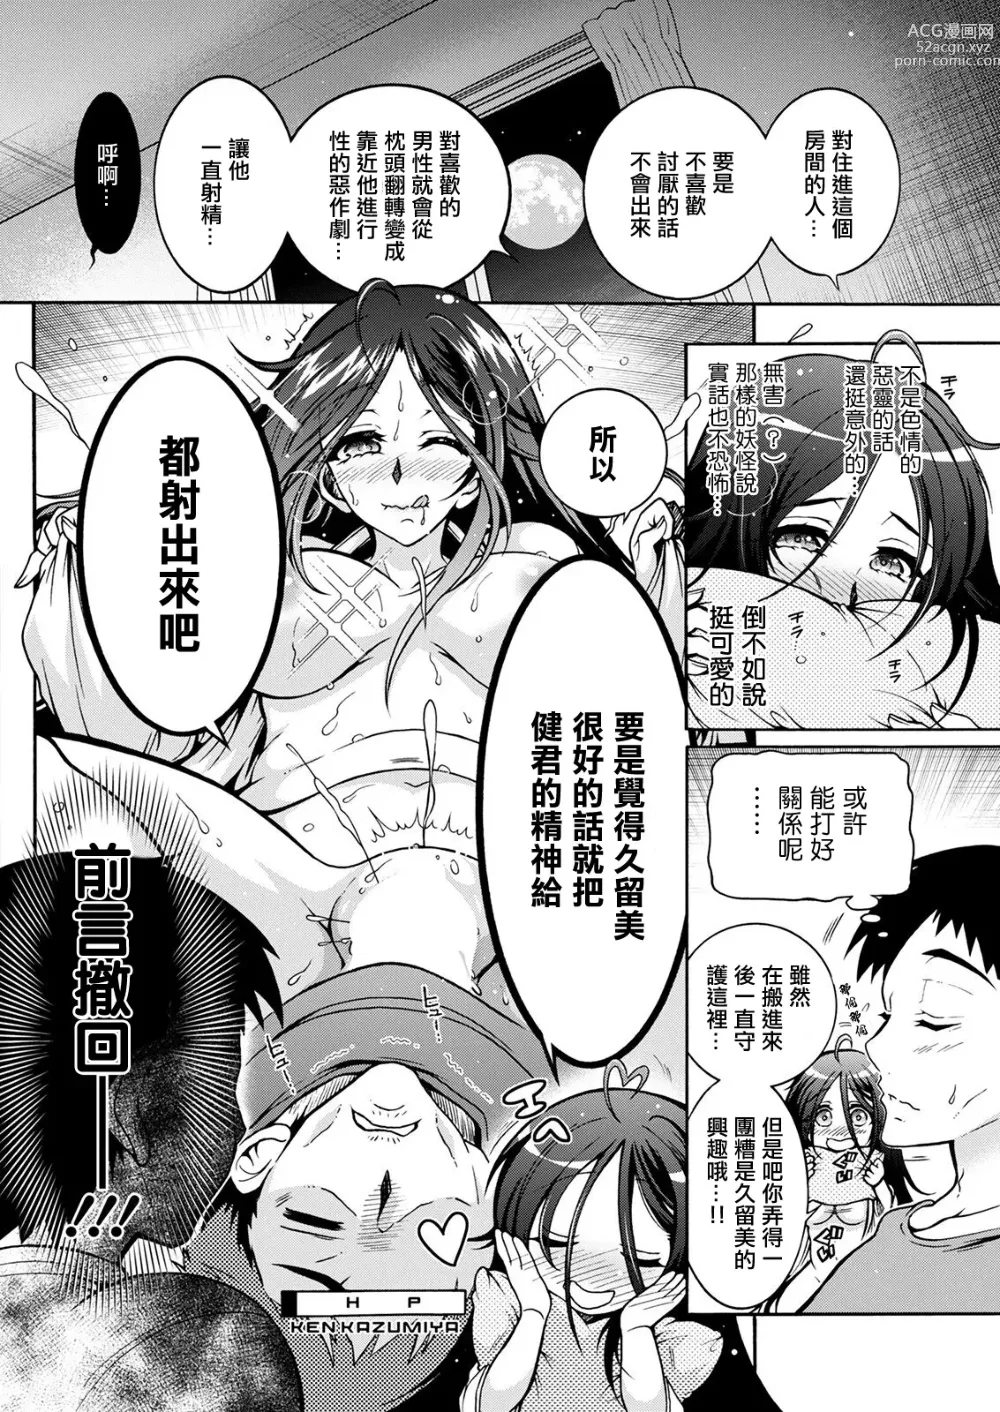 Page 10 of manga 妖怪HHH